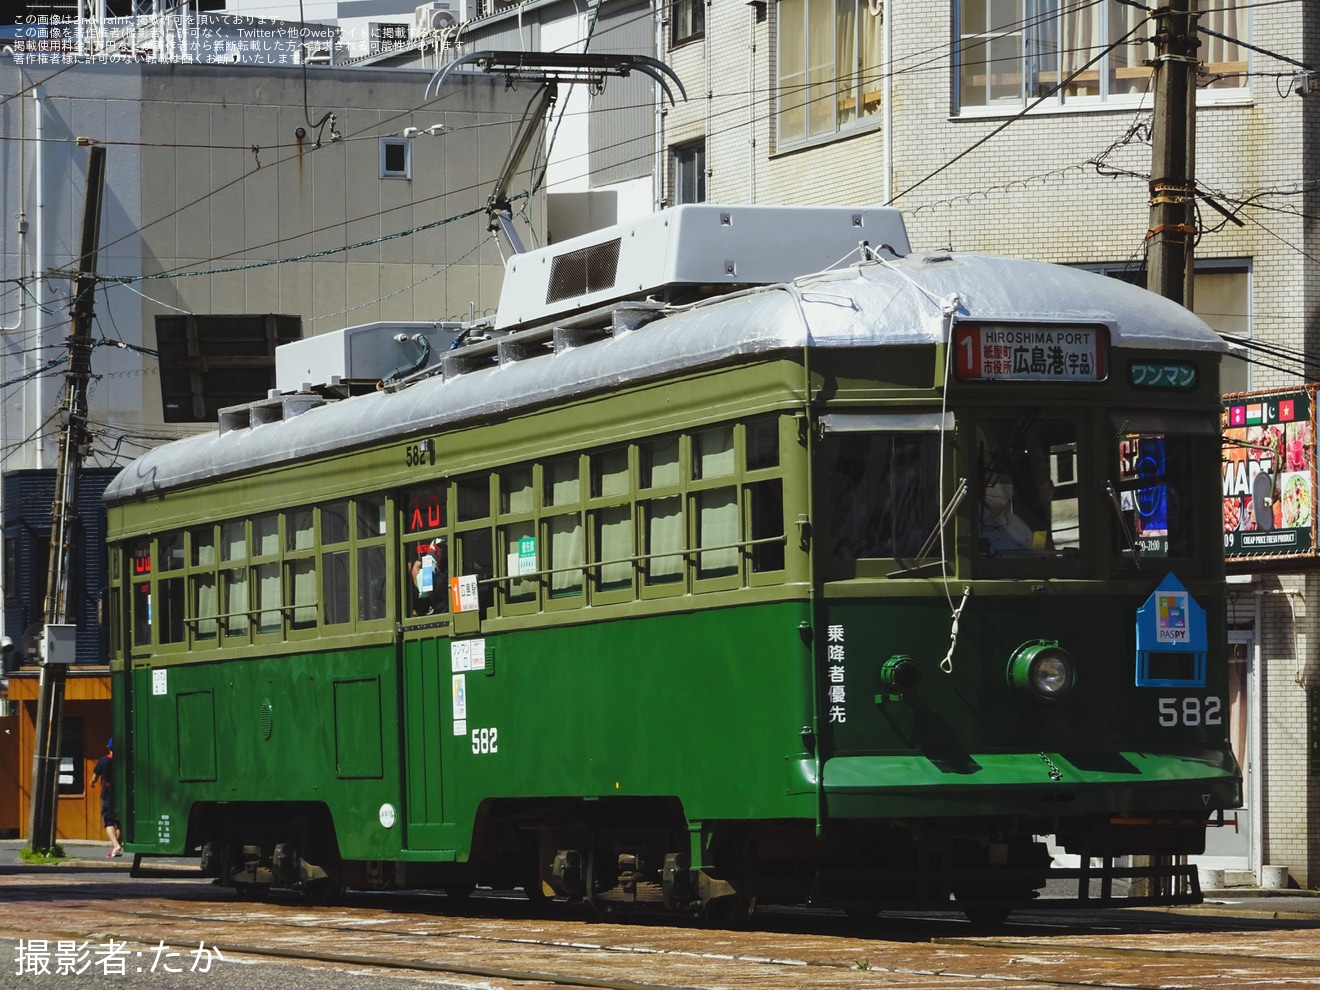 【広電】広島みなと夢花火大会の開催に伴う臨時列車の拡大写真